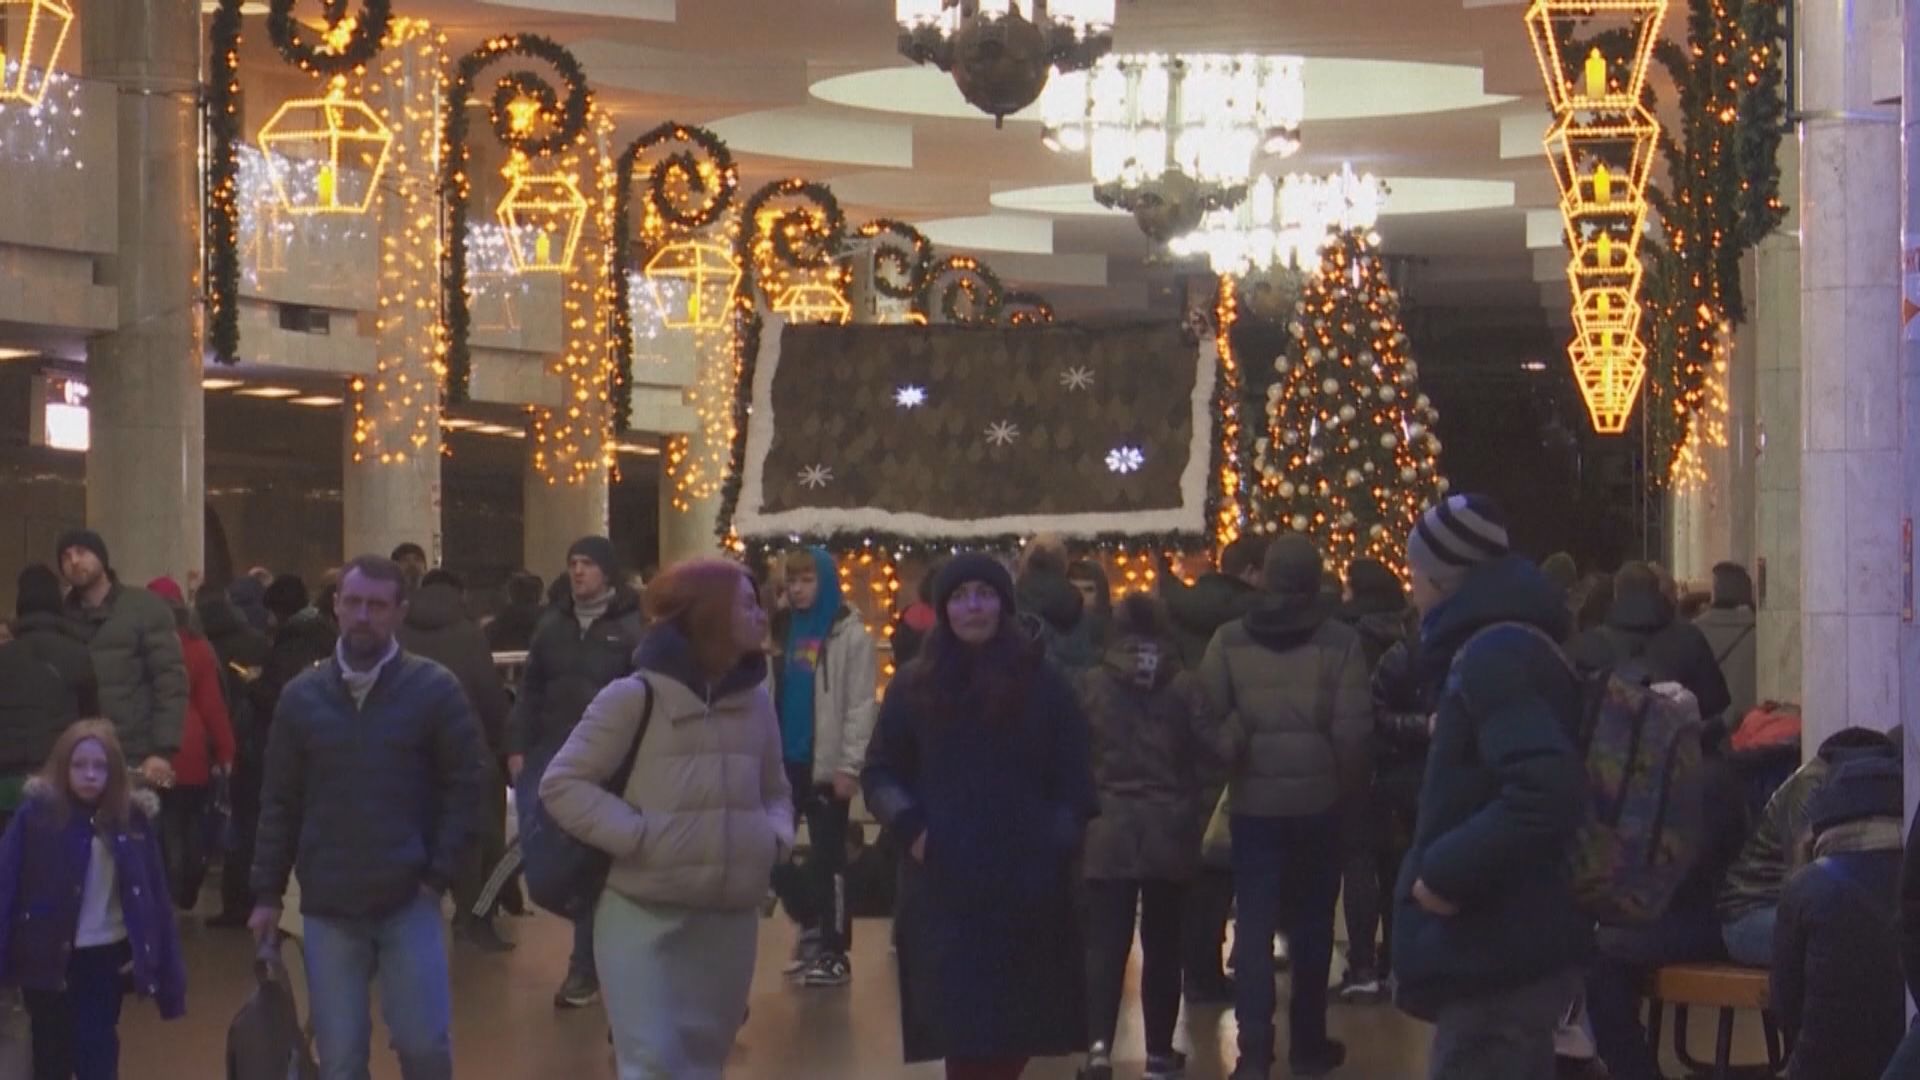 烏克蘭聖誕節官方日期改為12月25日